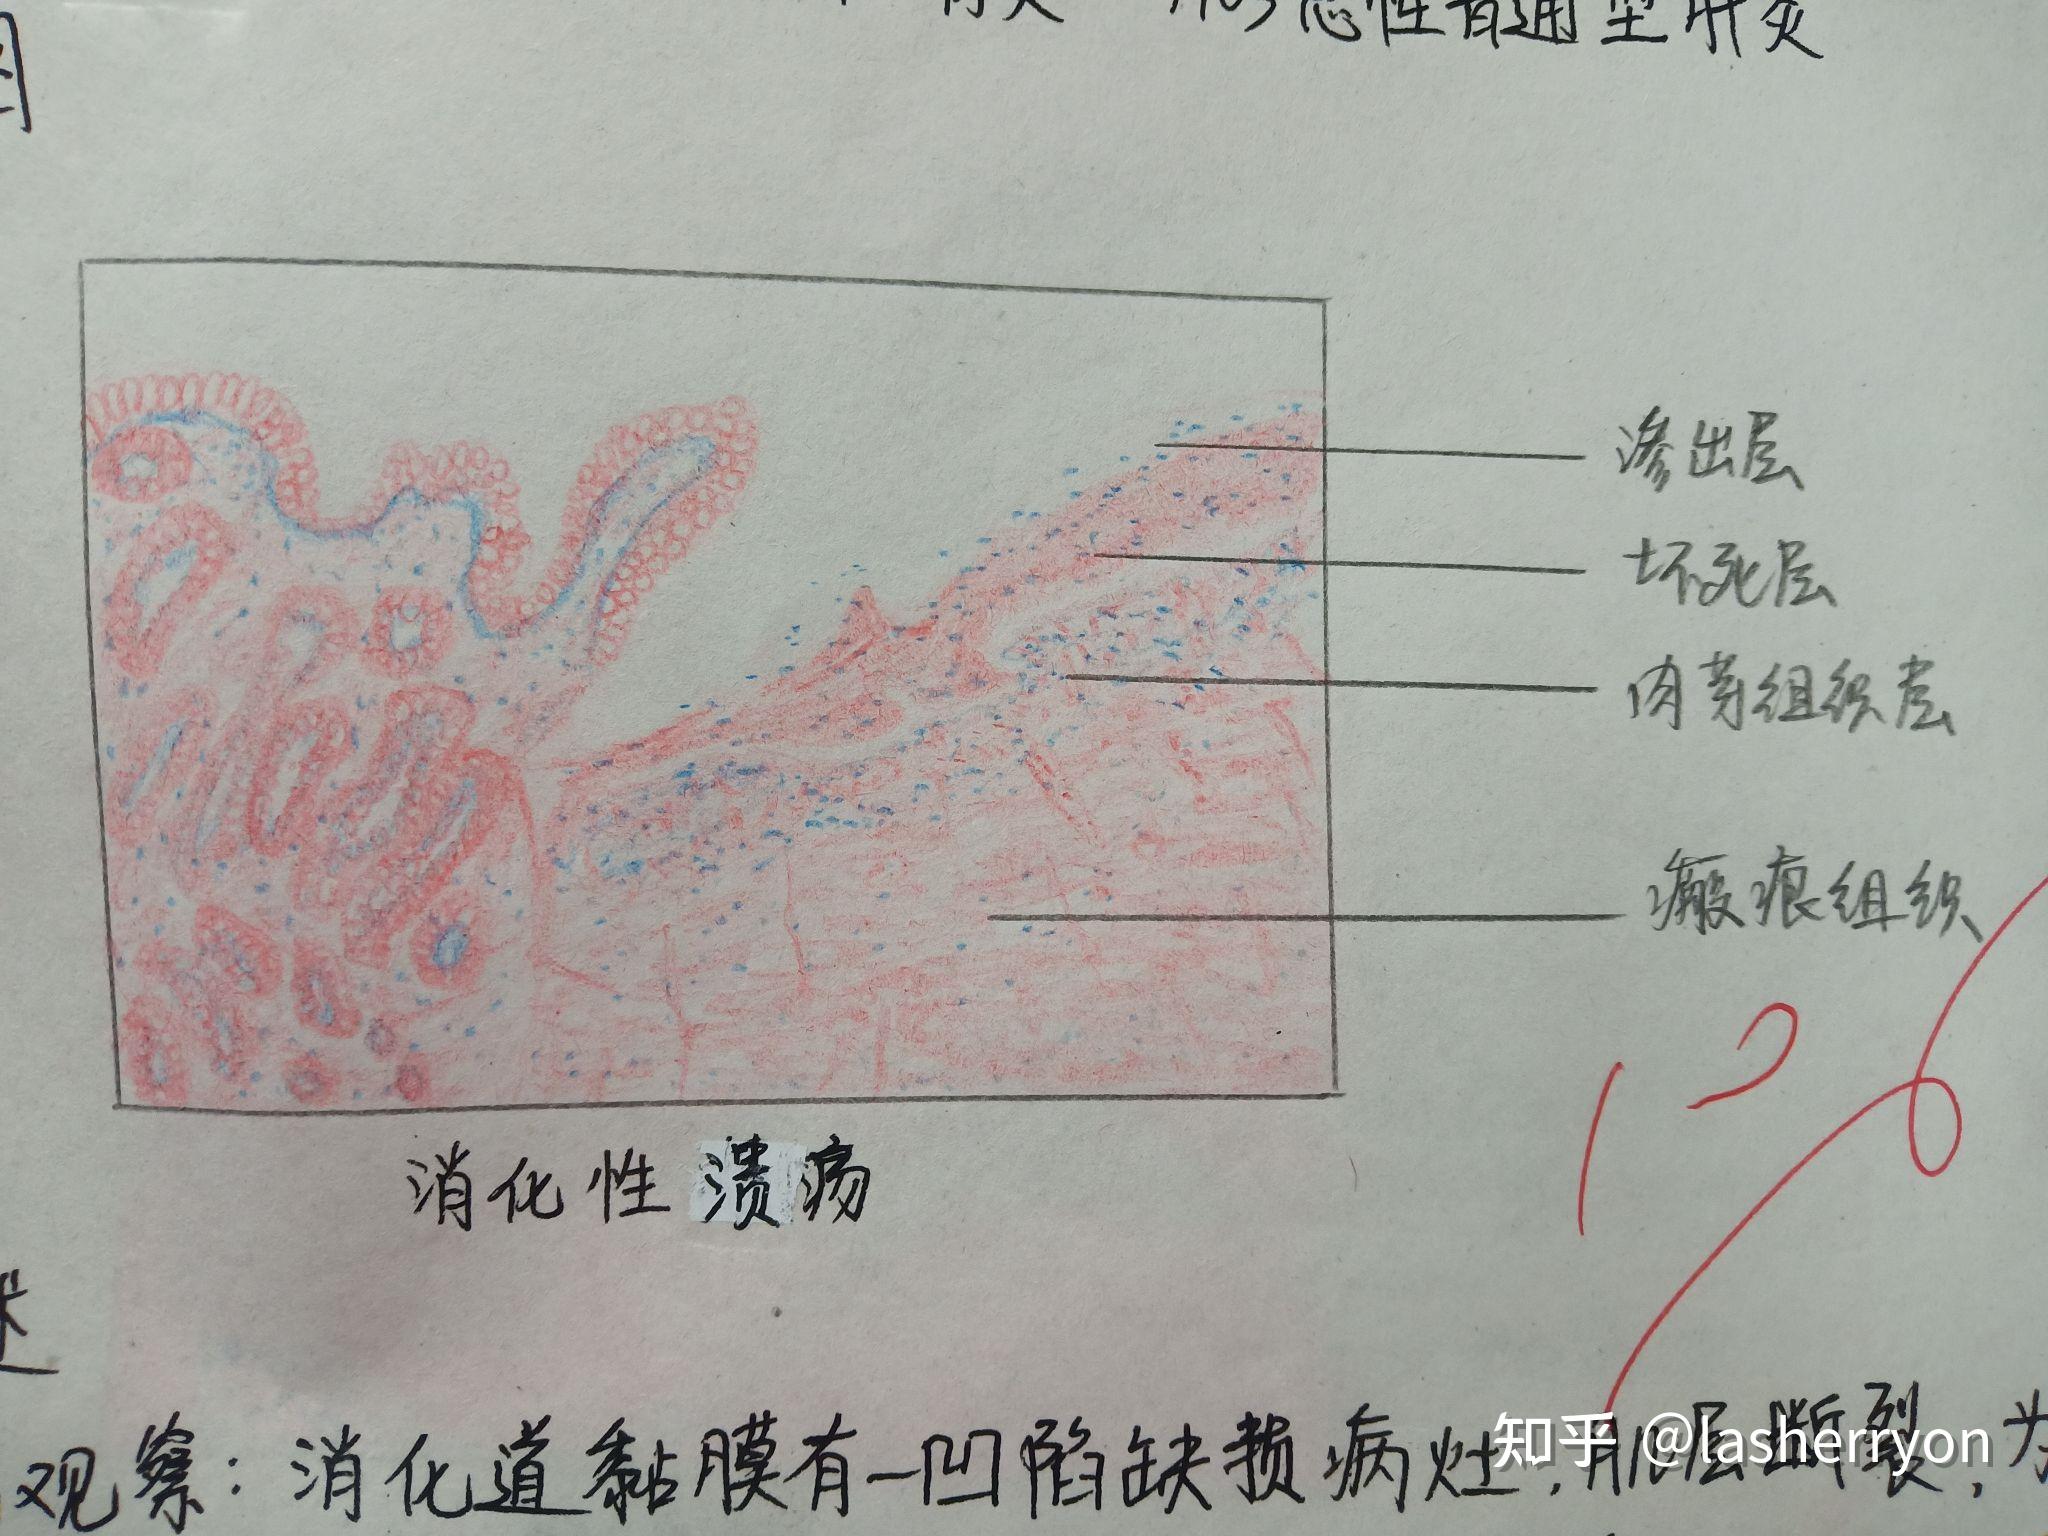 小吞噬现象红蓝铅笔图图片